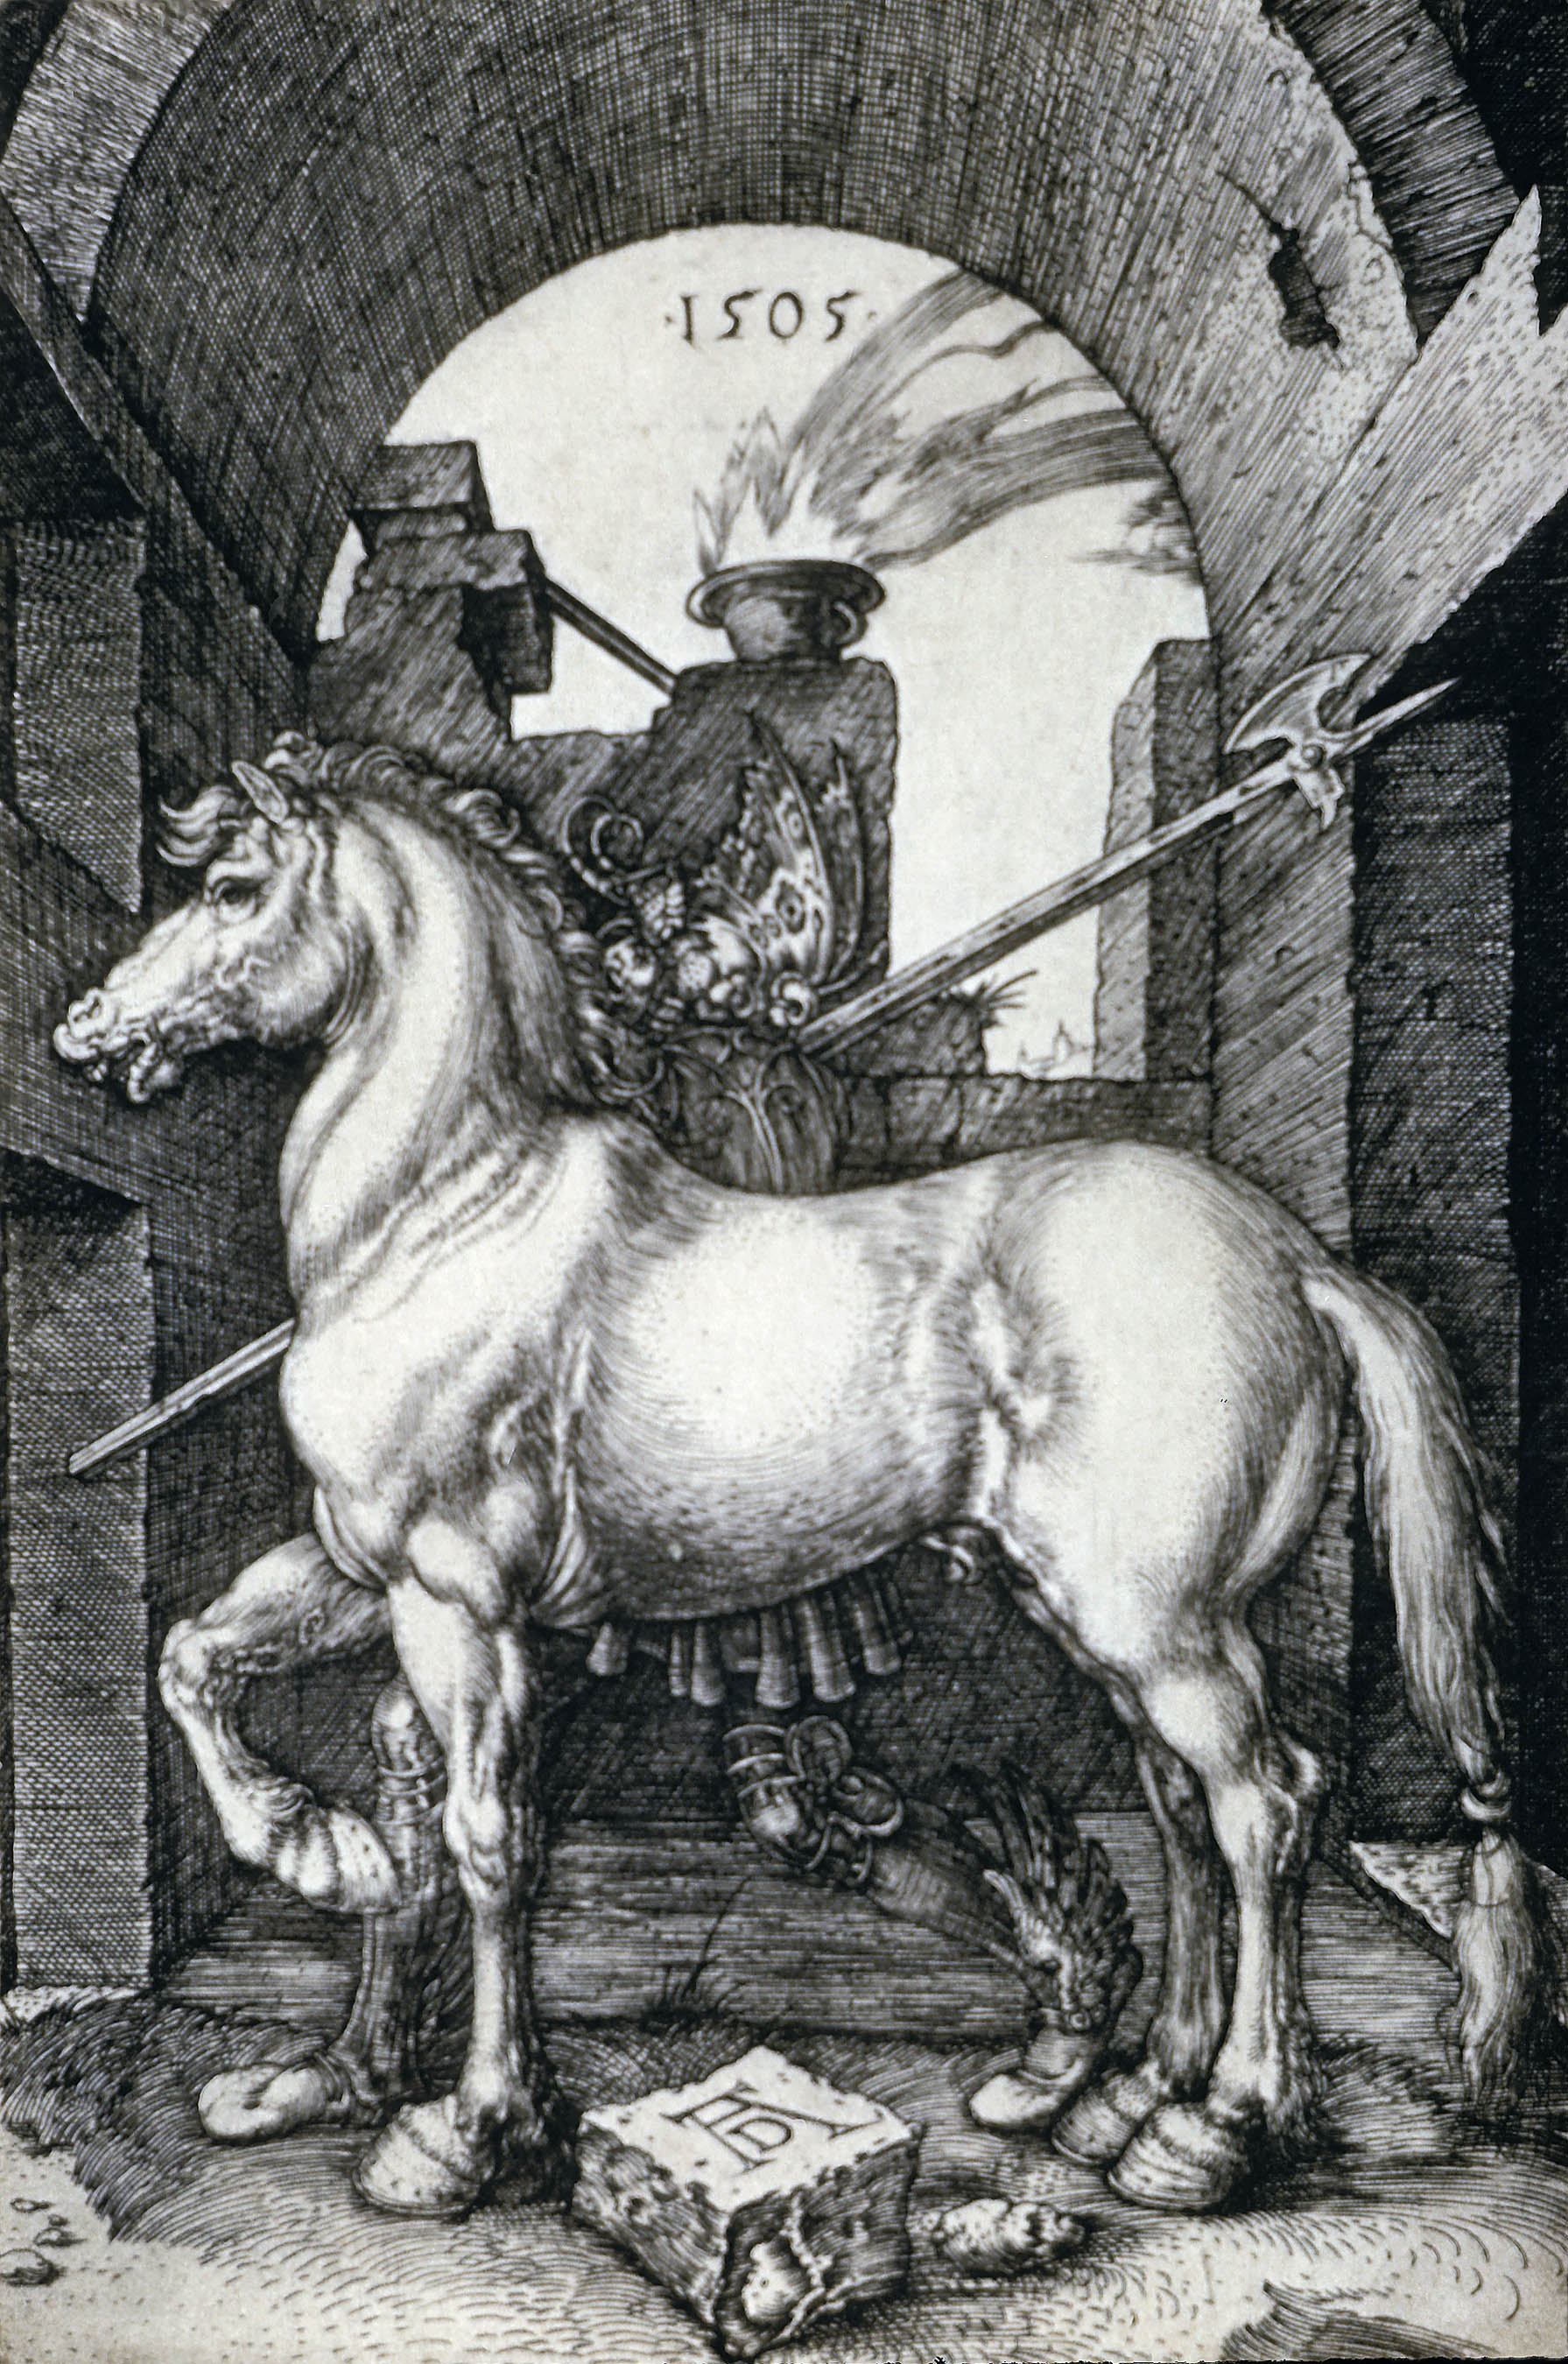 Μικρό άλογο by Άλμπρεχτ Ντύρερ - 1505 - - 